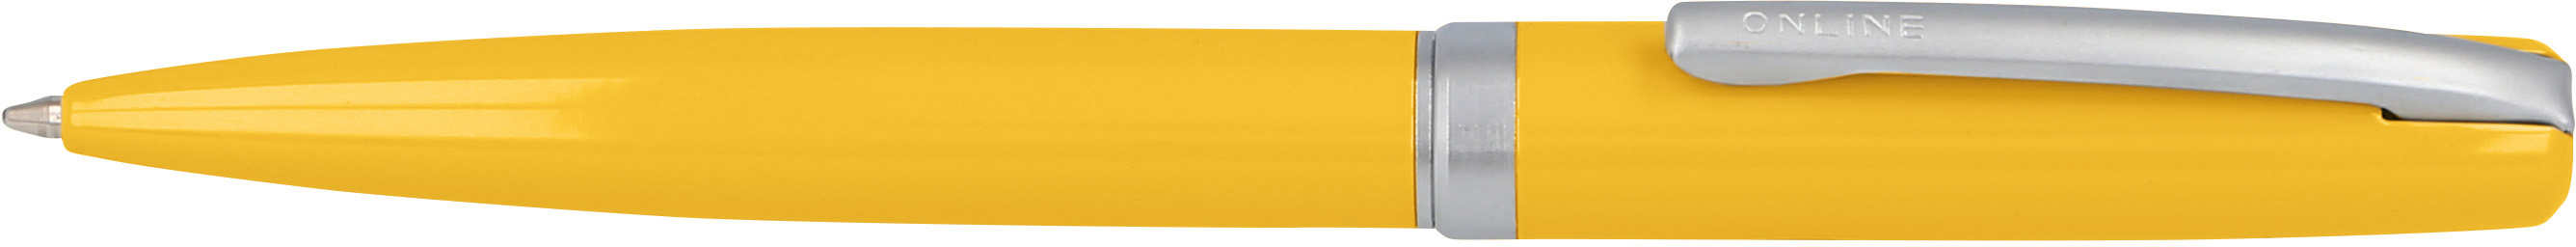 ONLINE Stylo à bille 34682/3D Eleganza Indian Summer Yellow Eleganza Indian Summer Yellow